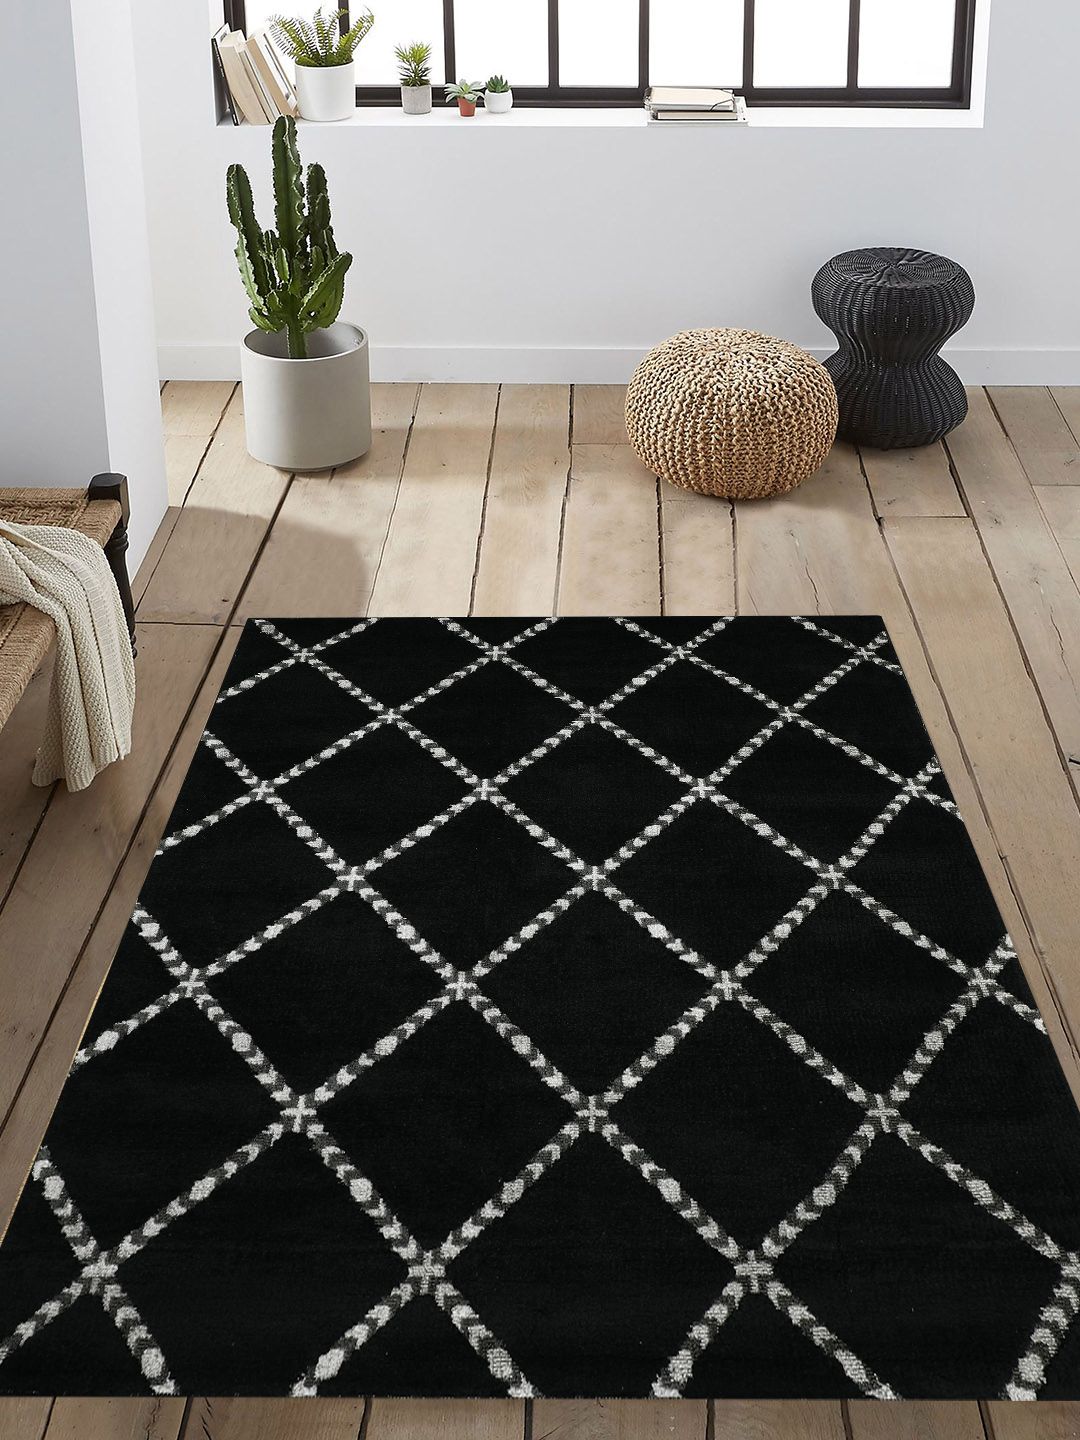 PRESTO Black & White Geometric Printed Anti-Skid Carpet Price in India